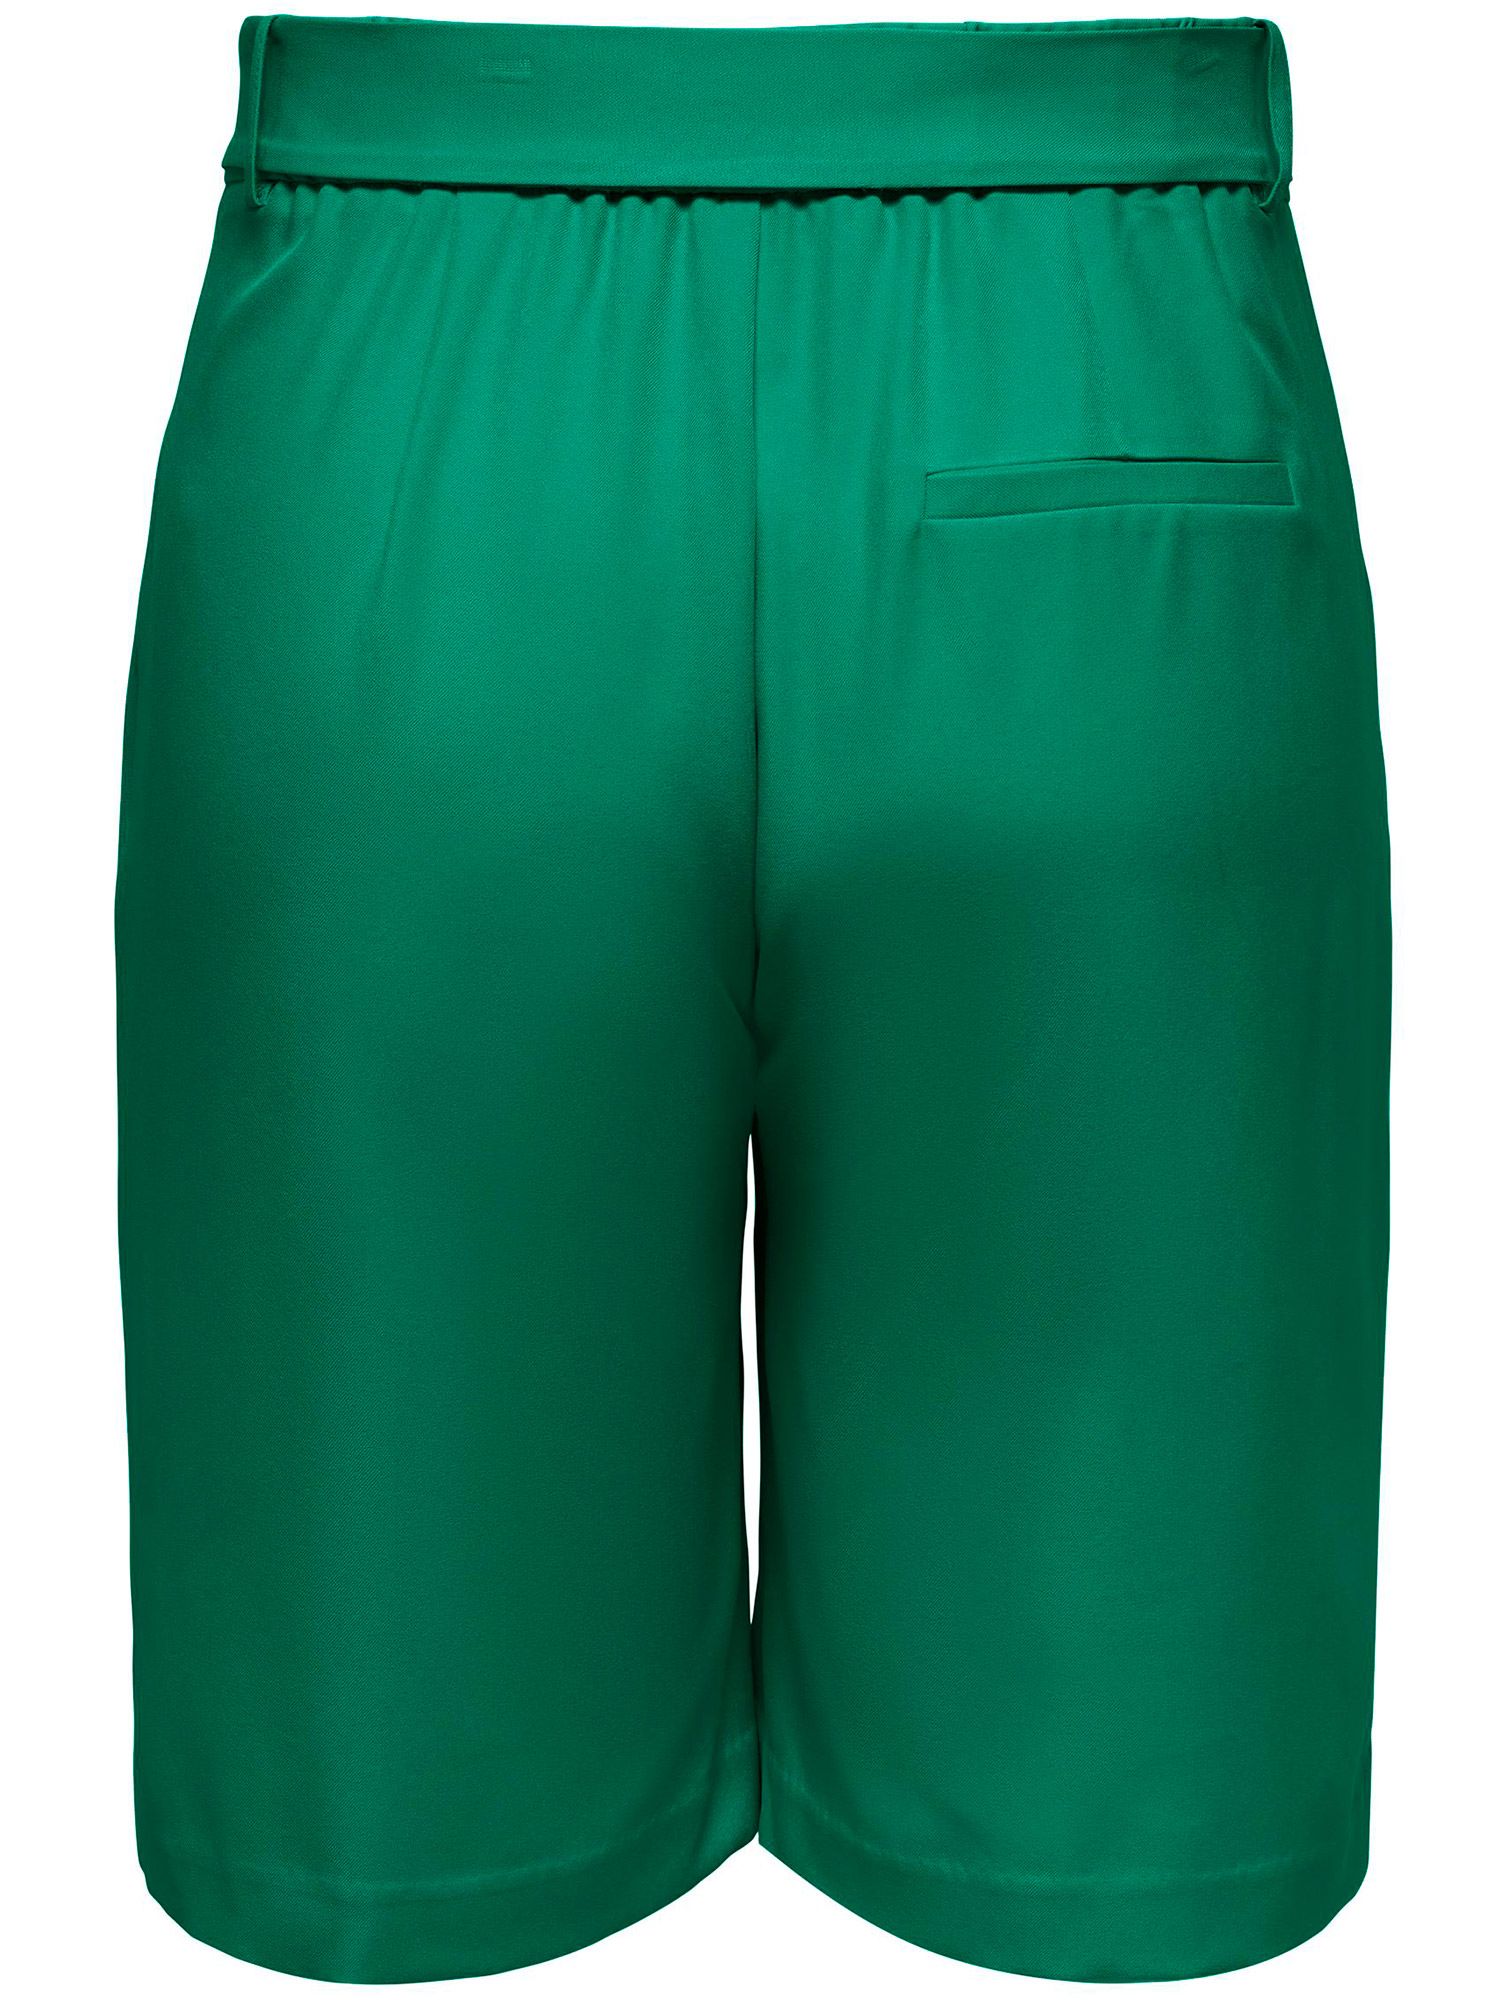 Car VIOLET - Flotte grønne shorts i klassisk look fra Only Carmakoma